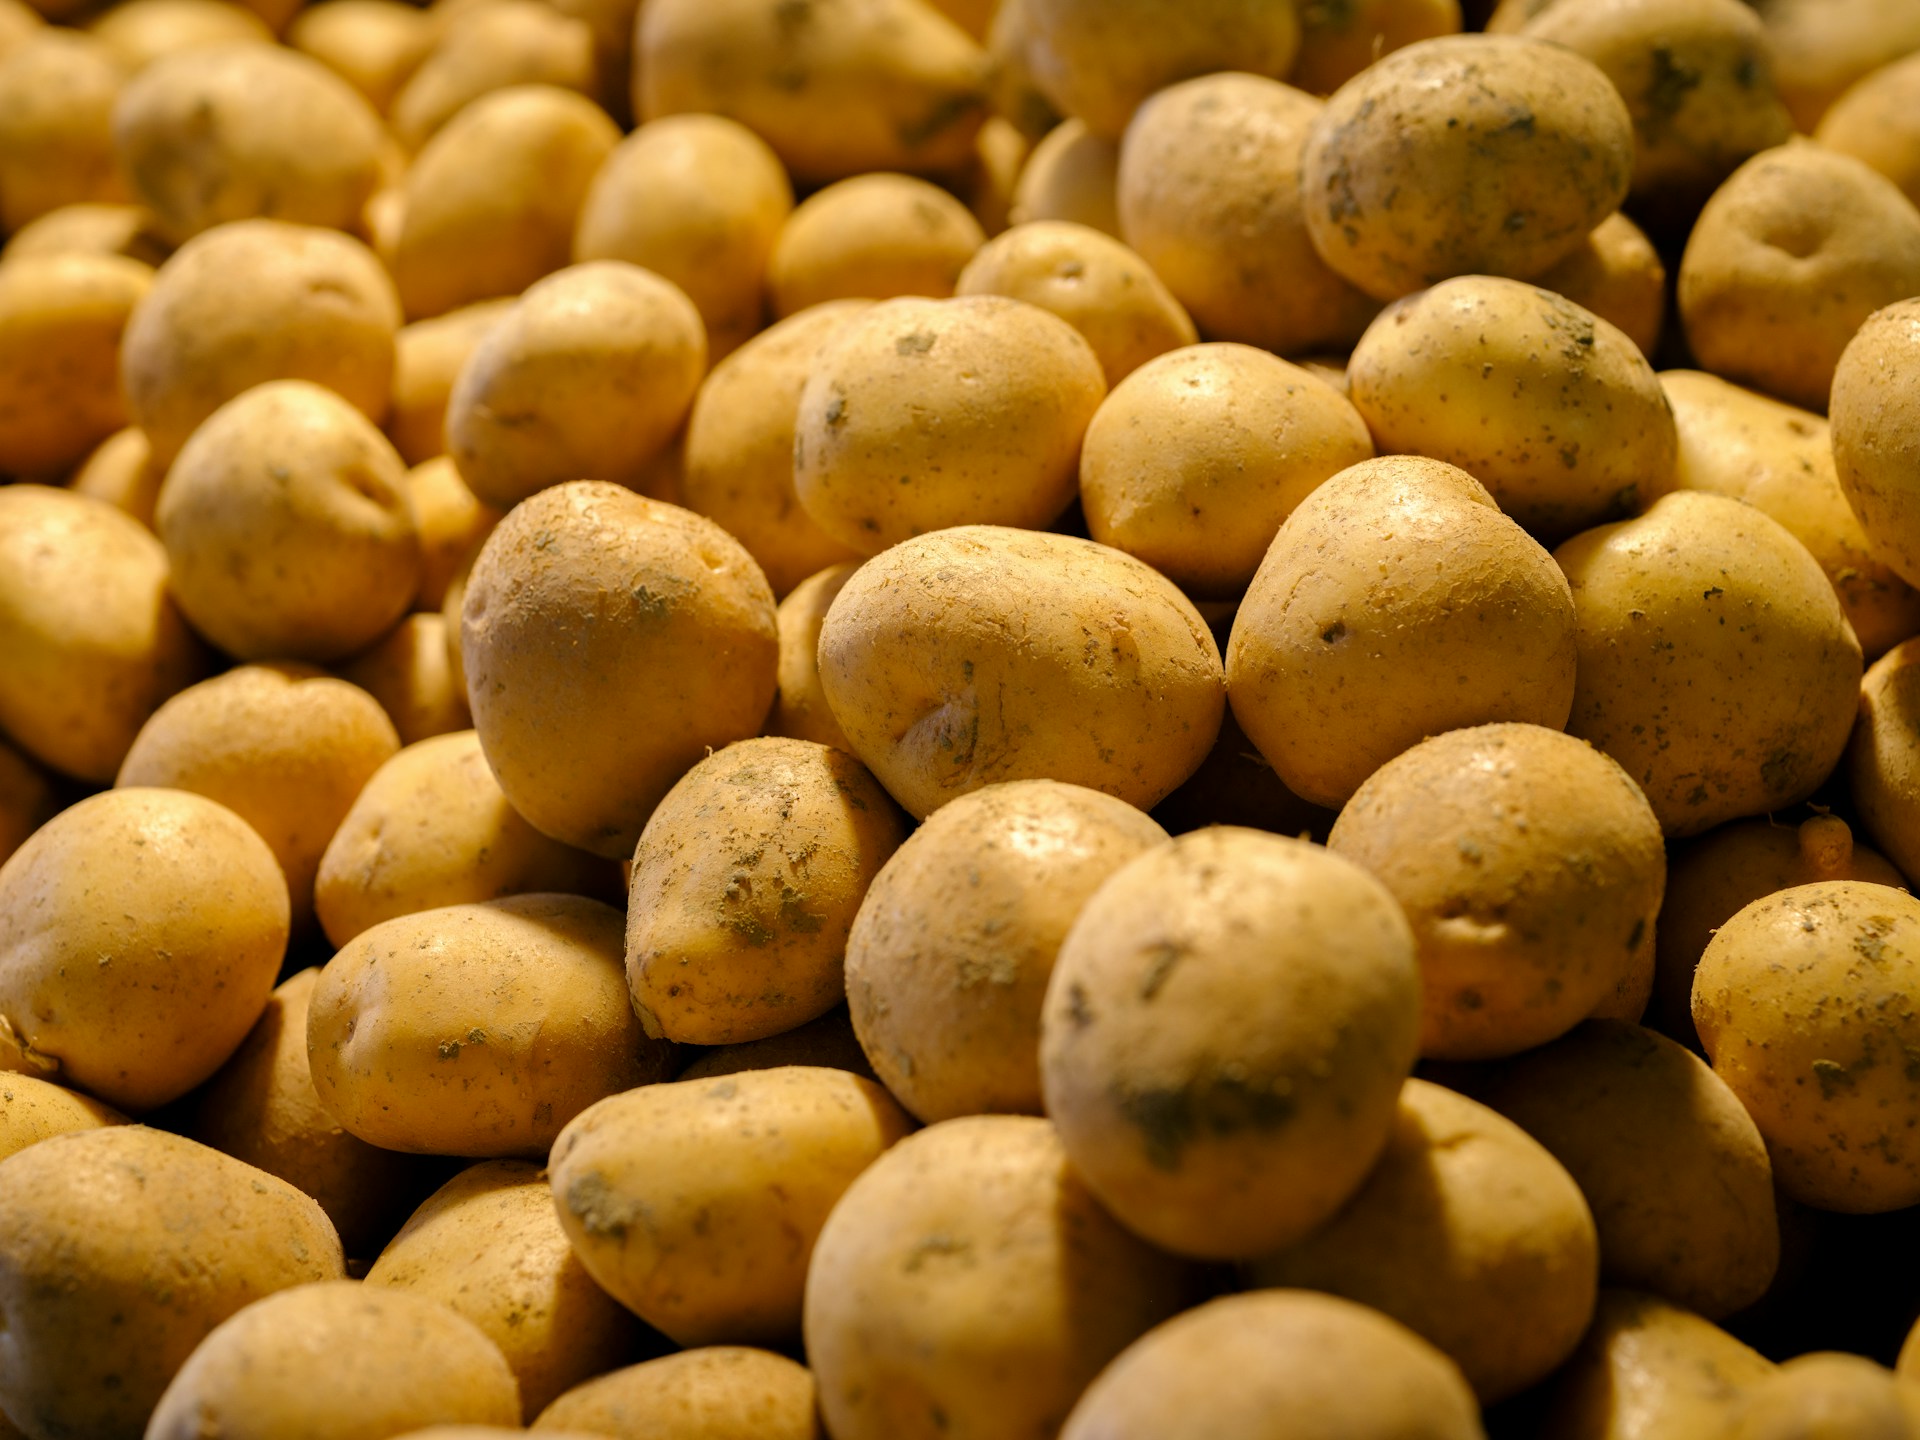 La patata o papa (Solanum tuberosum) es un tubérculo muy utilizado en la gastronomía. Foto de Engin Akyurt.